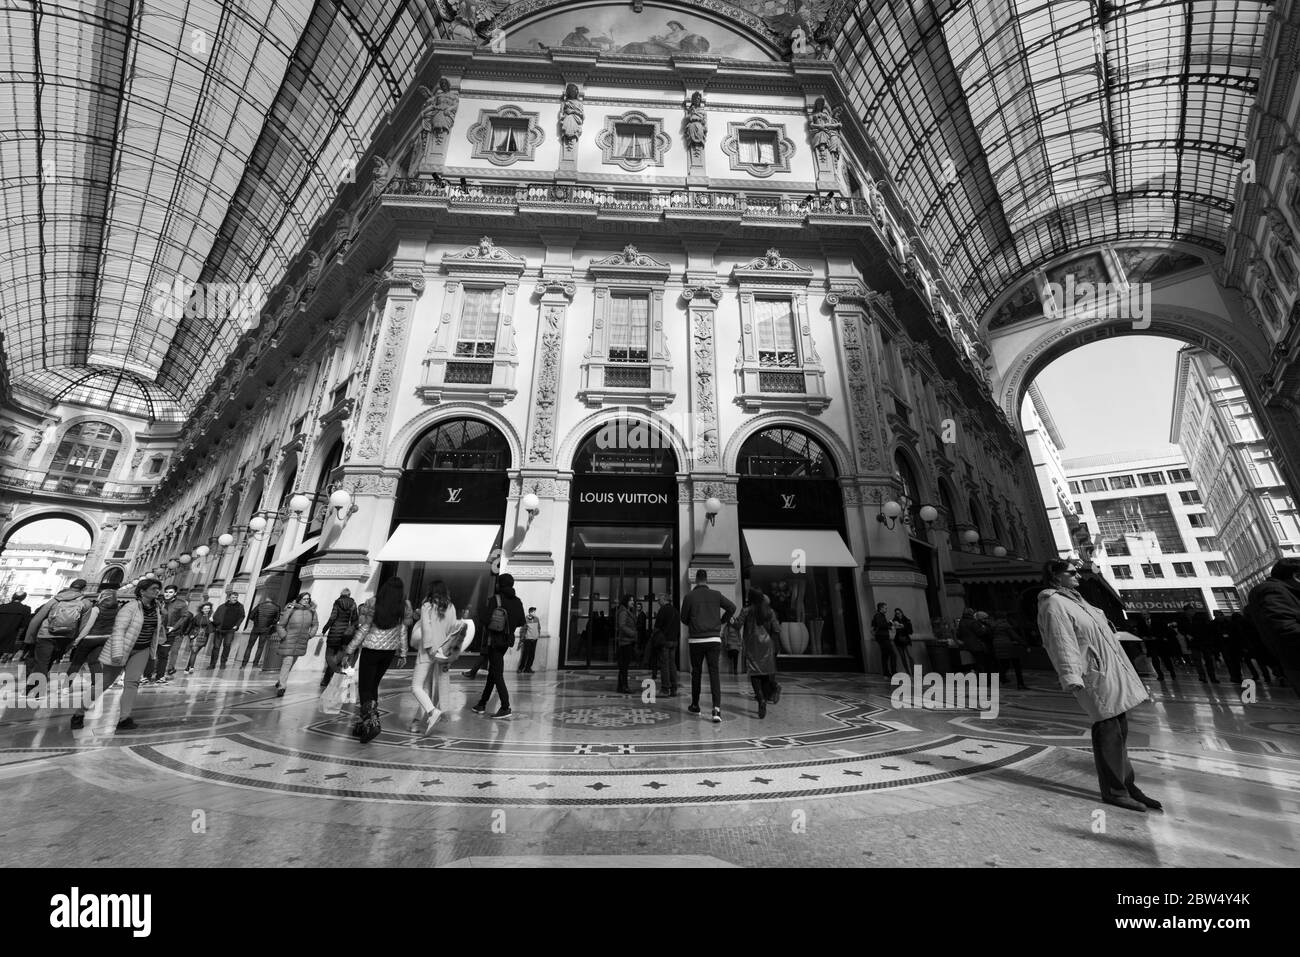 MAILAND, ITALIEN - 16, MÄRZ 2018: Schwarz-weiß Bild eines Luxus-Einkaufszentrum Galleria Vittorio Emanuele II, in Mailand, Italien Stockfoto